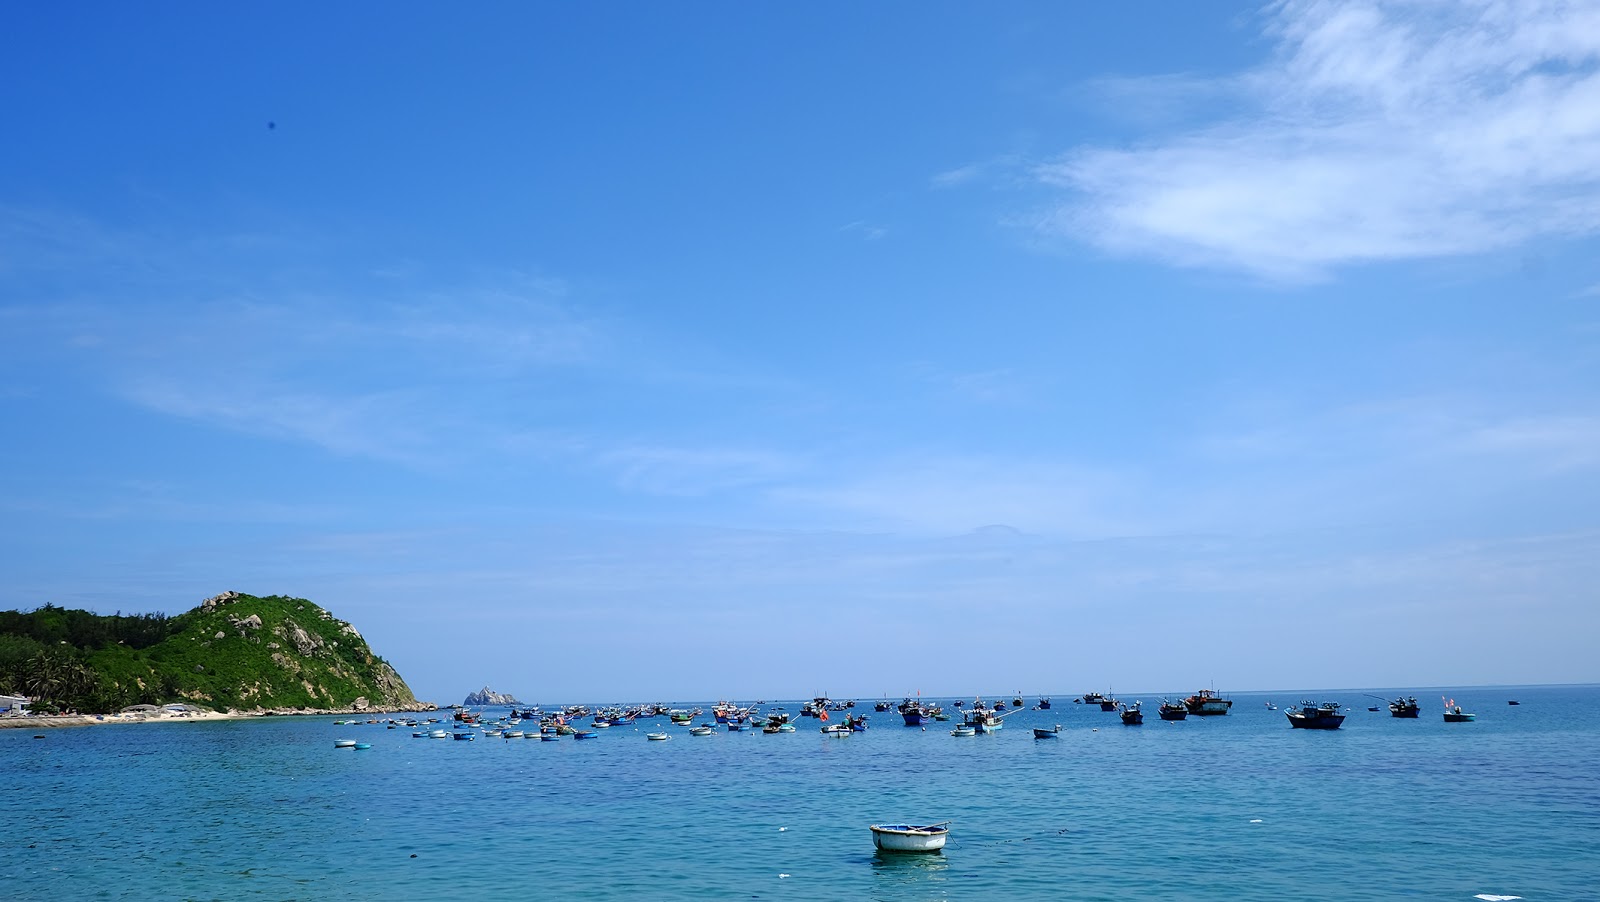 Đảo Cù Lao Xanh vì sao có tên gọi là “Hòn ngọc biển Đông”?